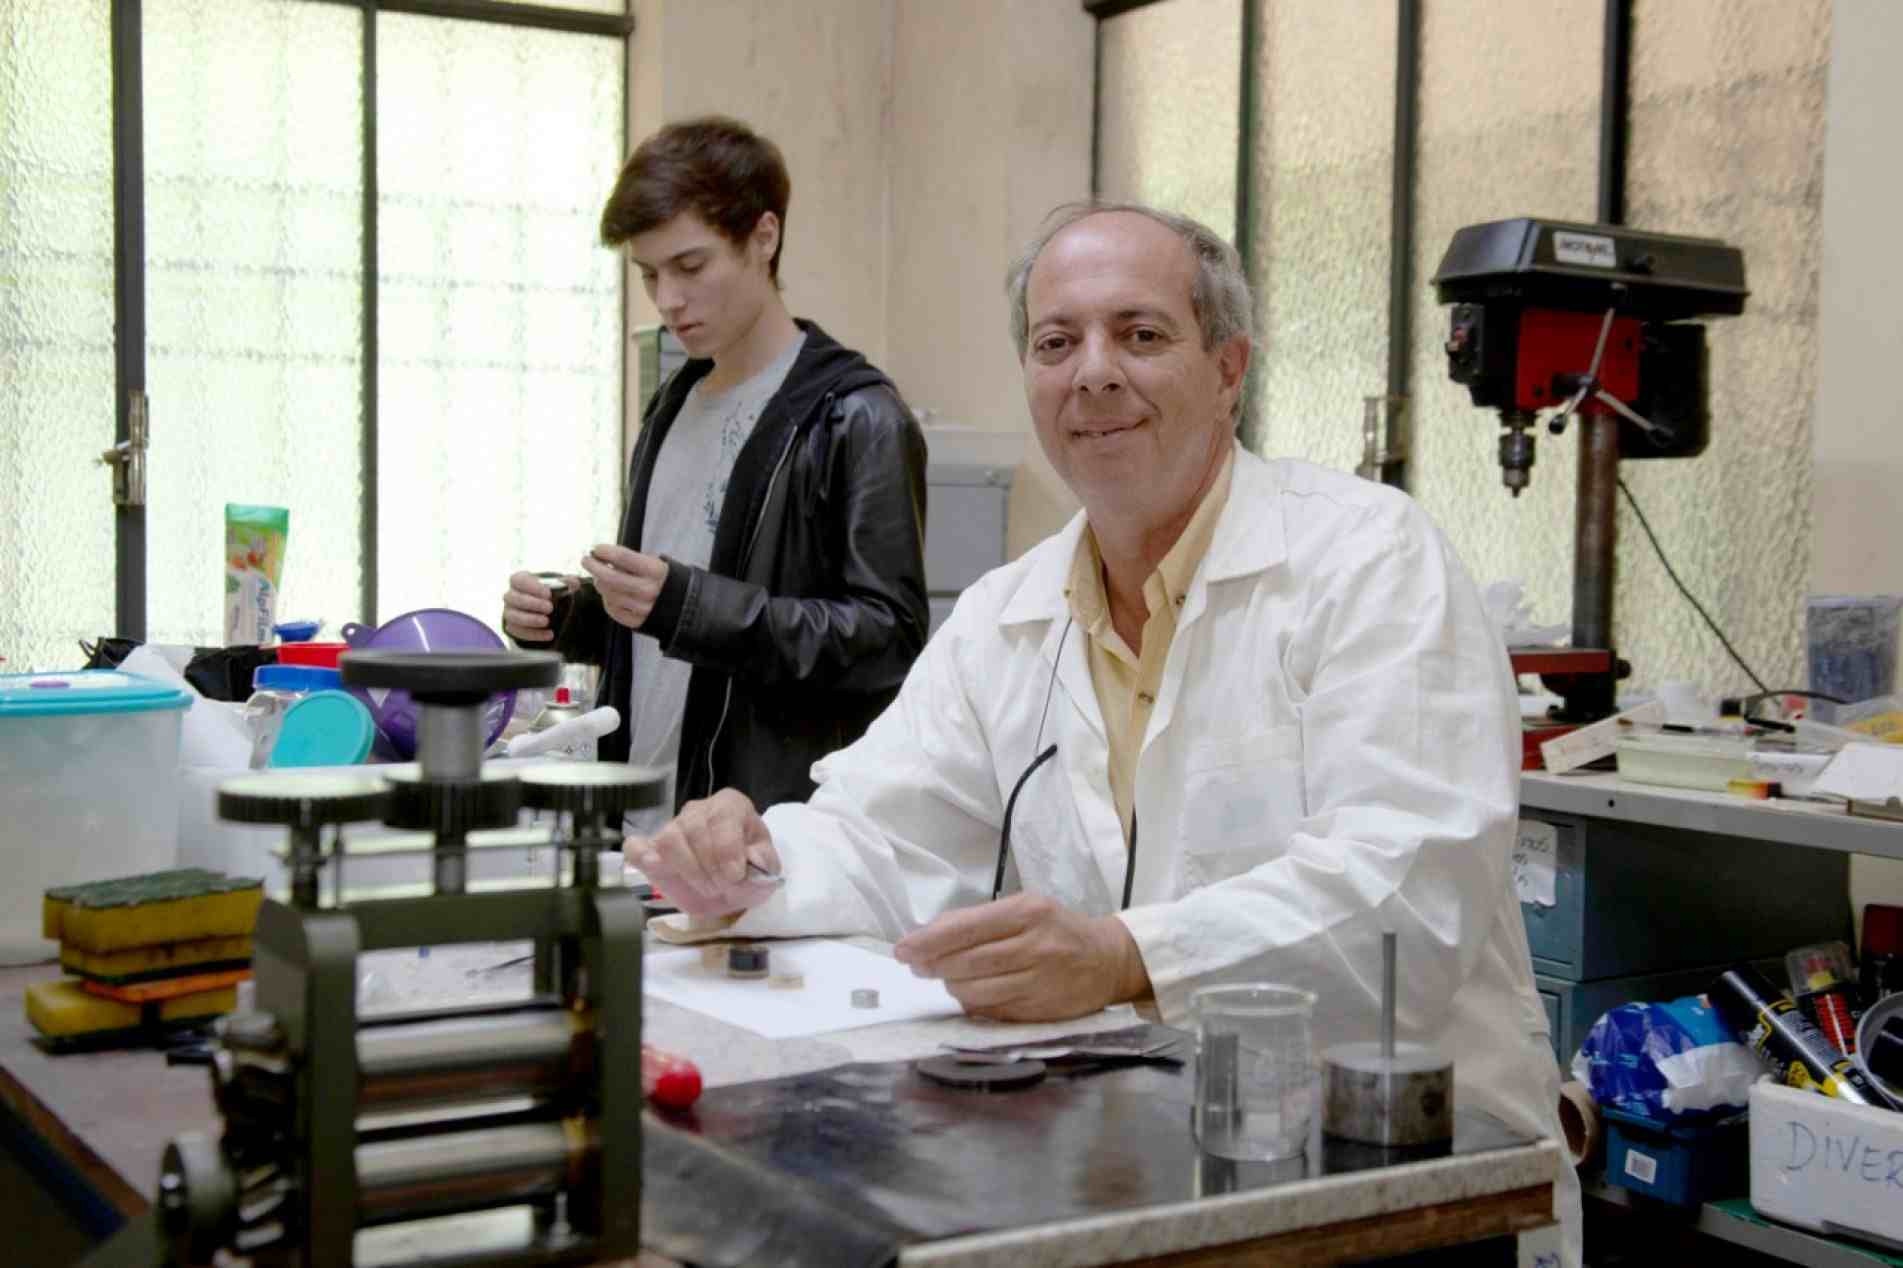 O professor Thomaz Restivo, acompanhado do seu filho Gustavo, cuja curiosidade foi o pontapé inicial para a pesquisa